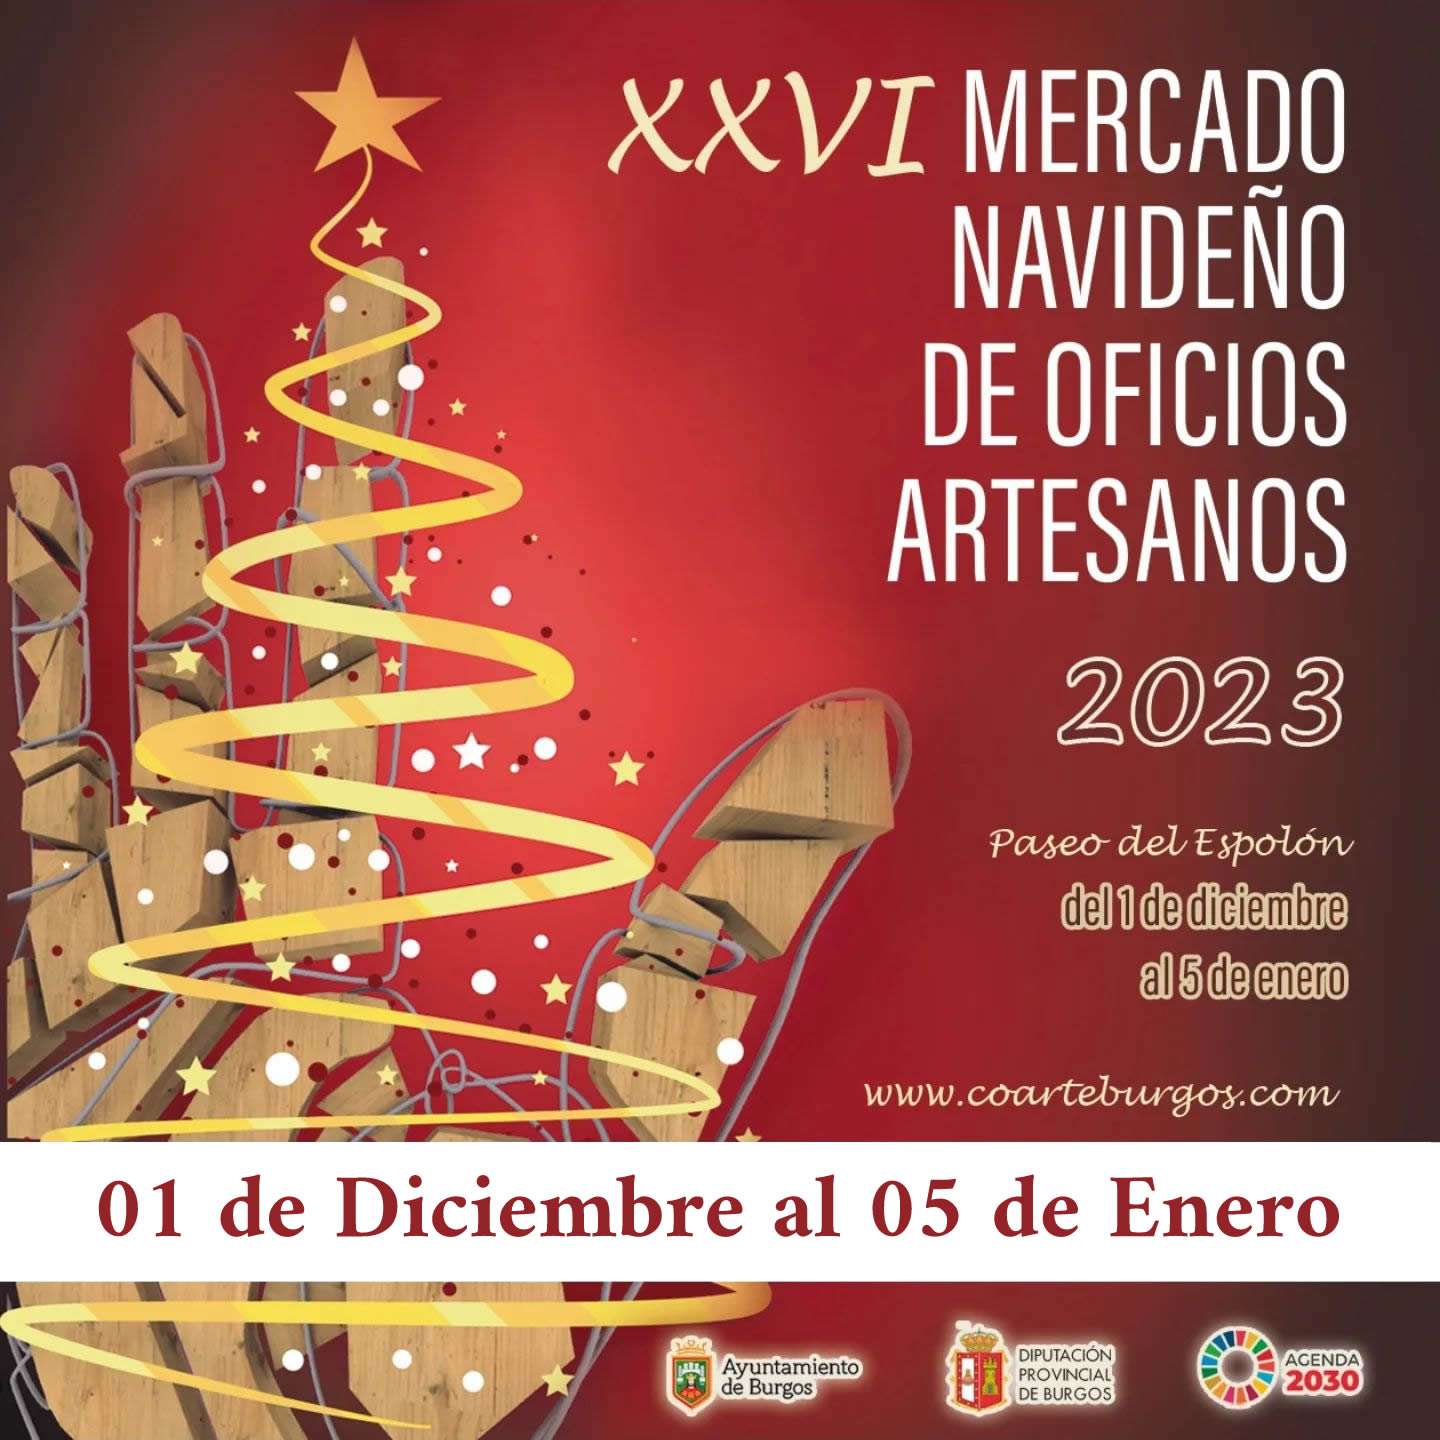 mercadosmedievales.net - XXVI Mercado Navideño De Oficios Artesanos Burgos Navidad 2023-2024